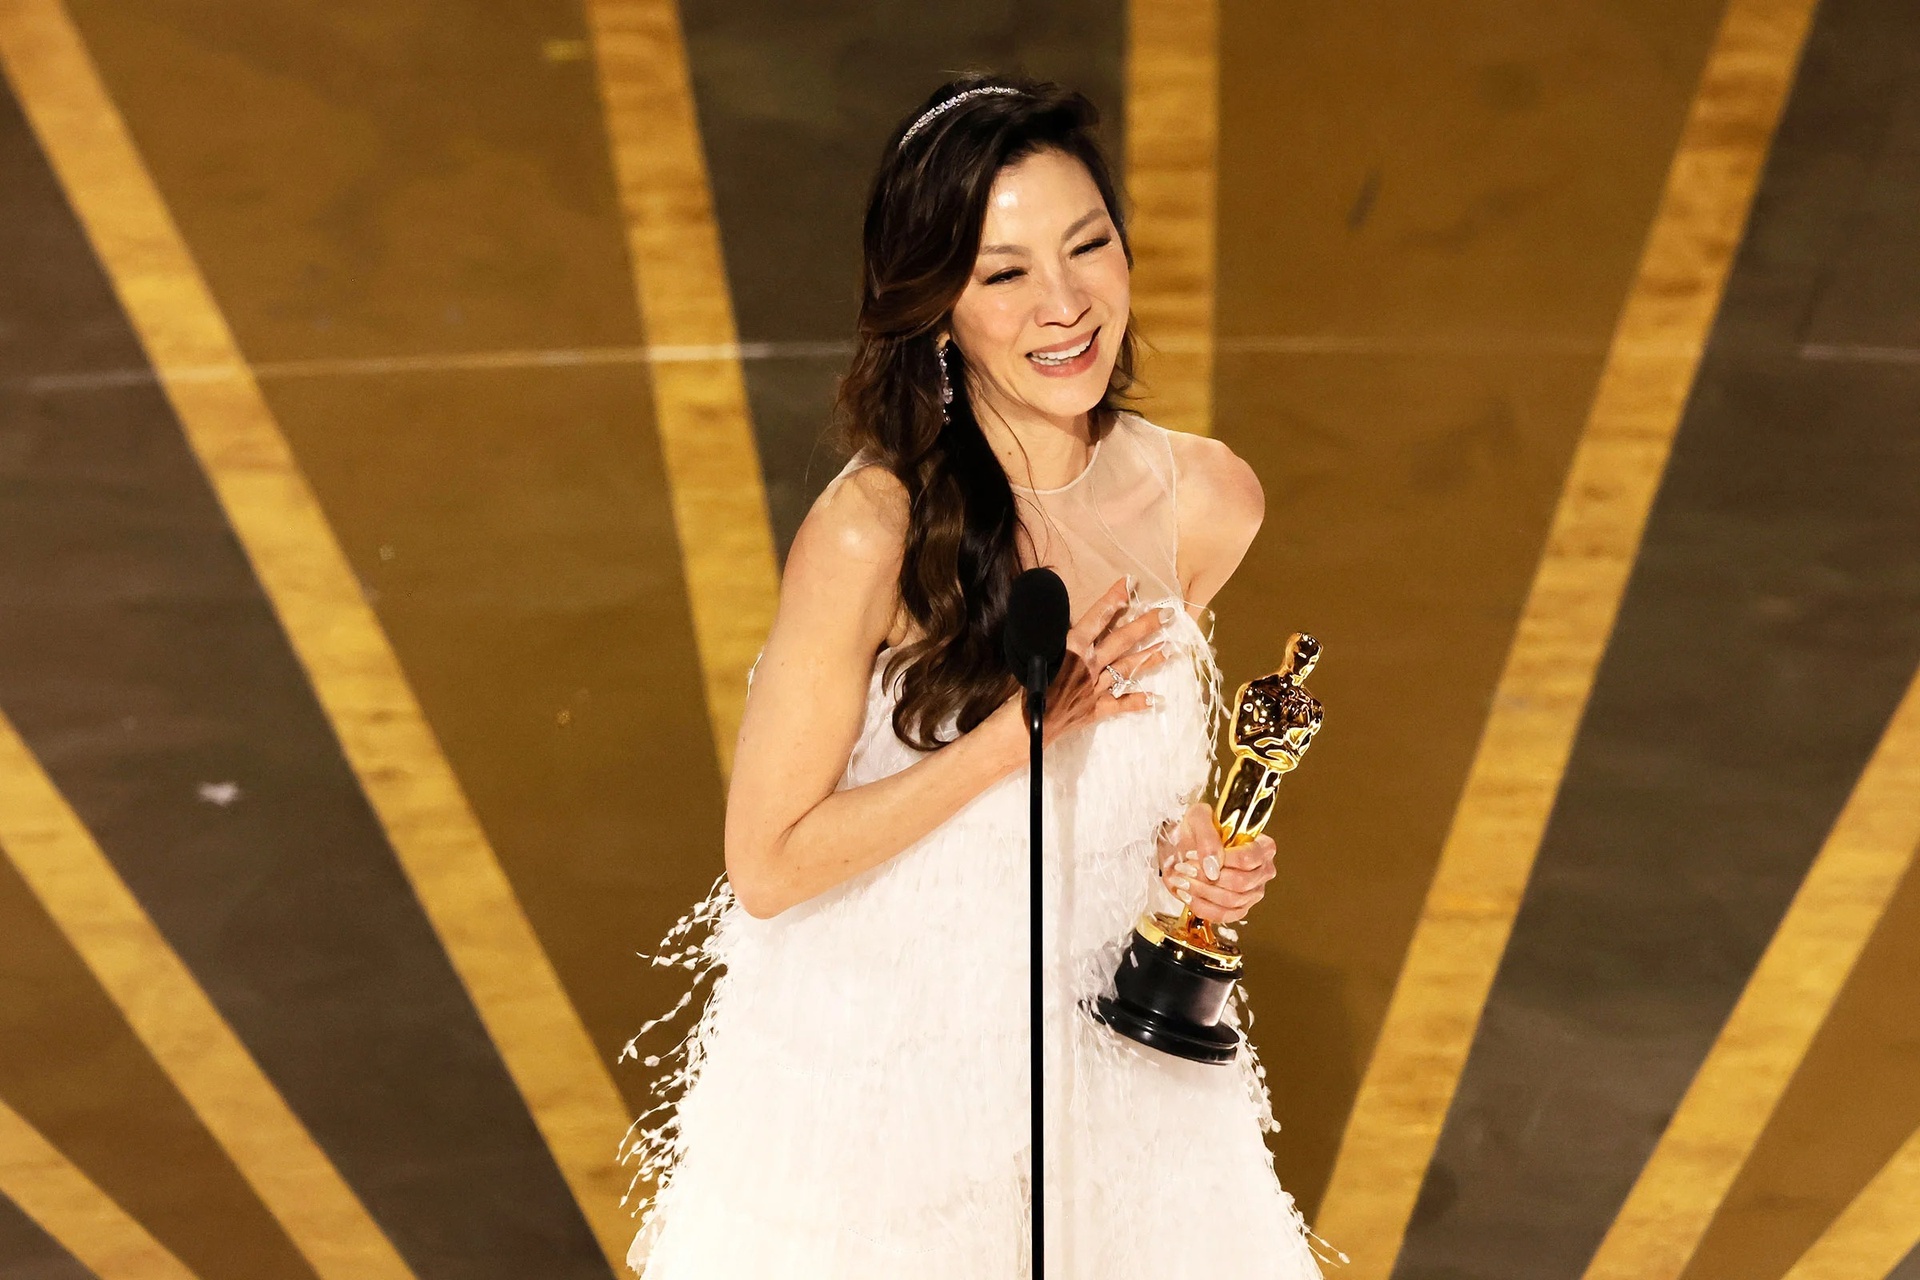 Ý nghĩa thực sự mà Dương Tử Quỳnh muốn gửi gắm trong phát ngôn tại buổi lễ Oscar  - Ảnh 1